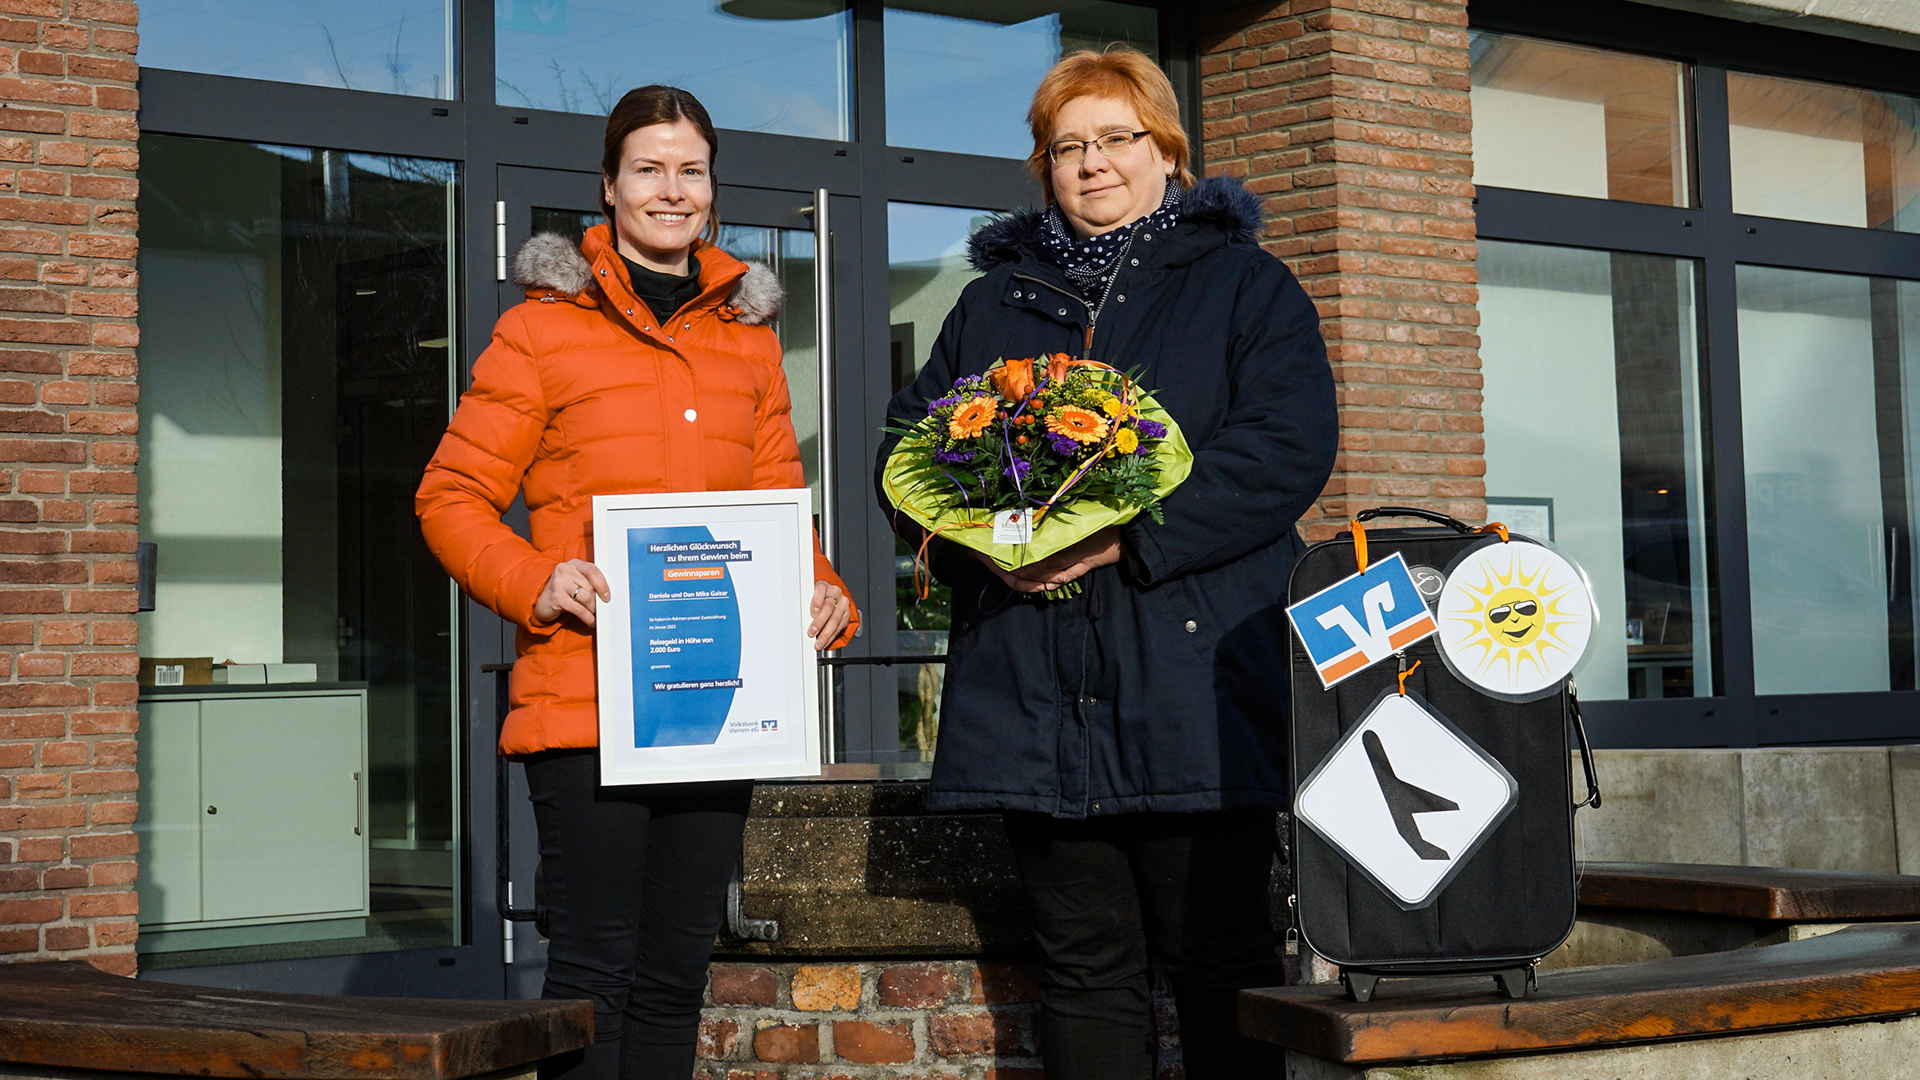 Gratulation an die glückliche Gewinnerin, Daniela Gaisar, durch Sarah Maring, Privatkundenberaterin der Volksbank Viersen eG.